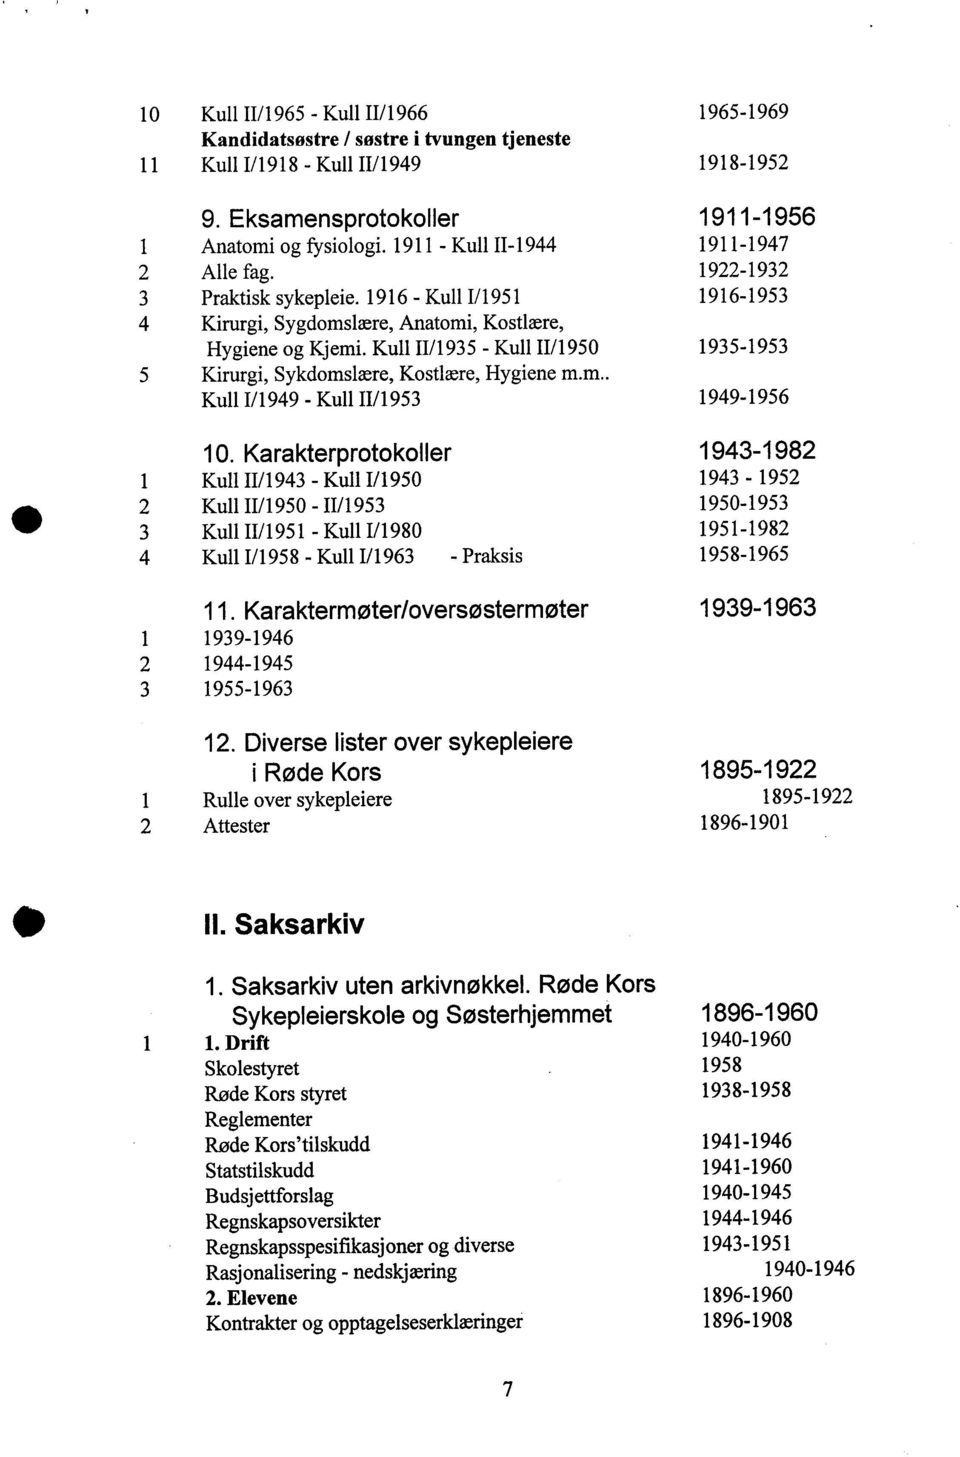 Kull 11/1935 - Kull 11/1950 1935-1953 5 Kirurgi, Sykdomslære, Kostlære, Hygiene m.m.. Kull 1/1949 - Kull 11/1953 1949-1956 10.